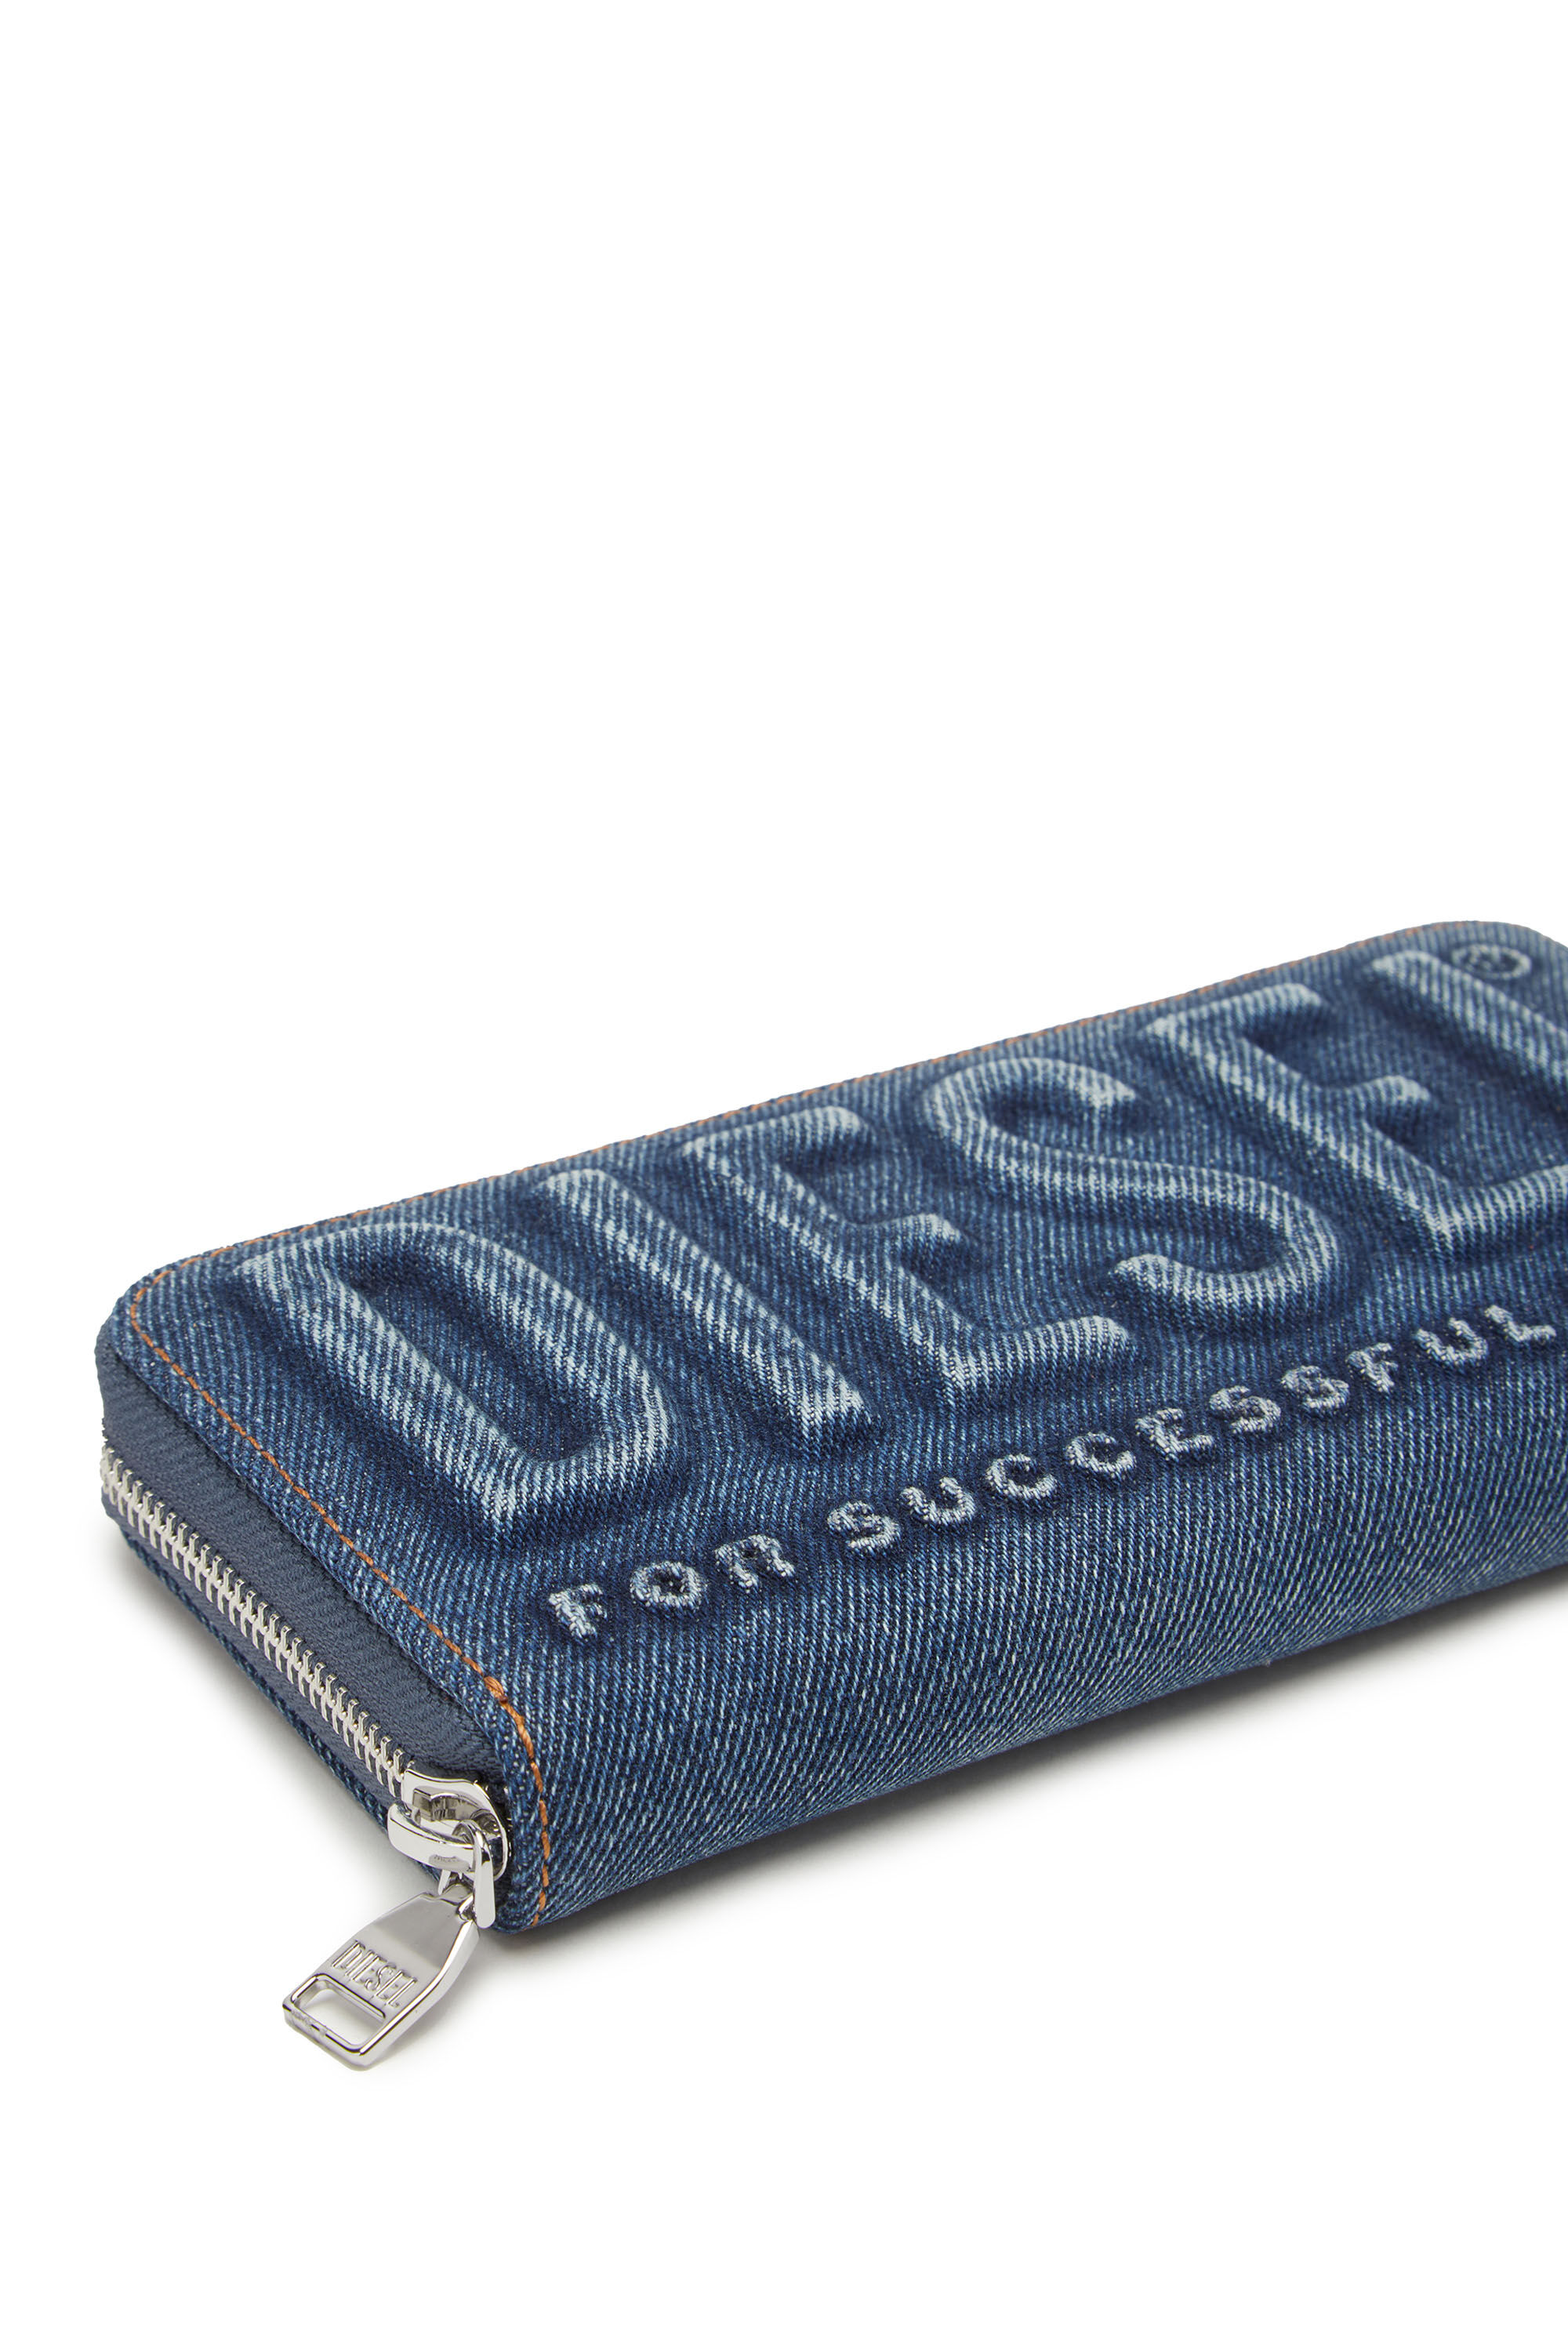 CONTINENTAL ZIP L Man: Long zip wallet in logo-embossed denim | Diesel